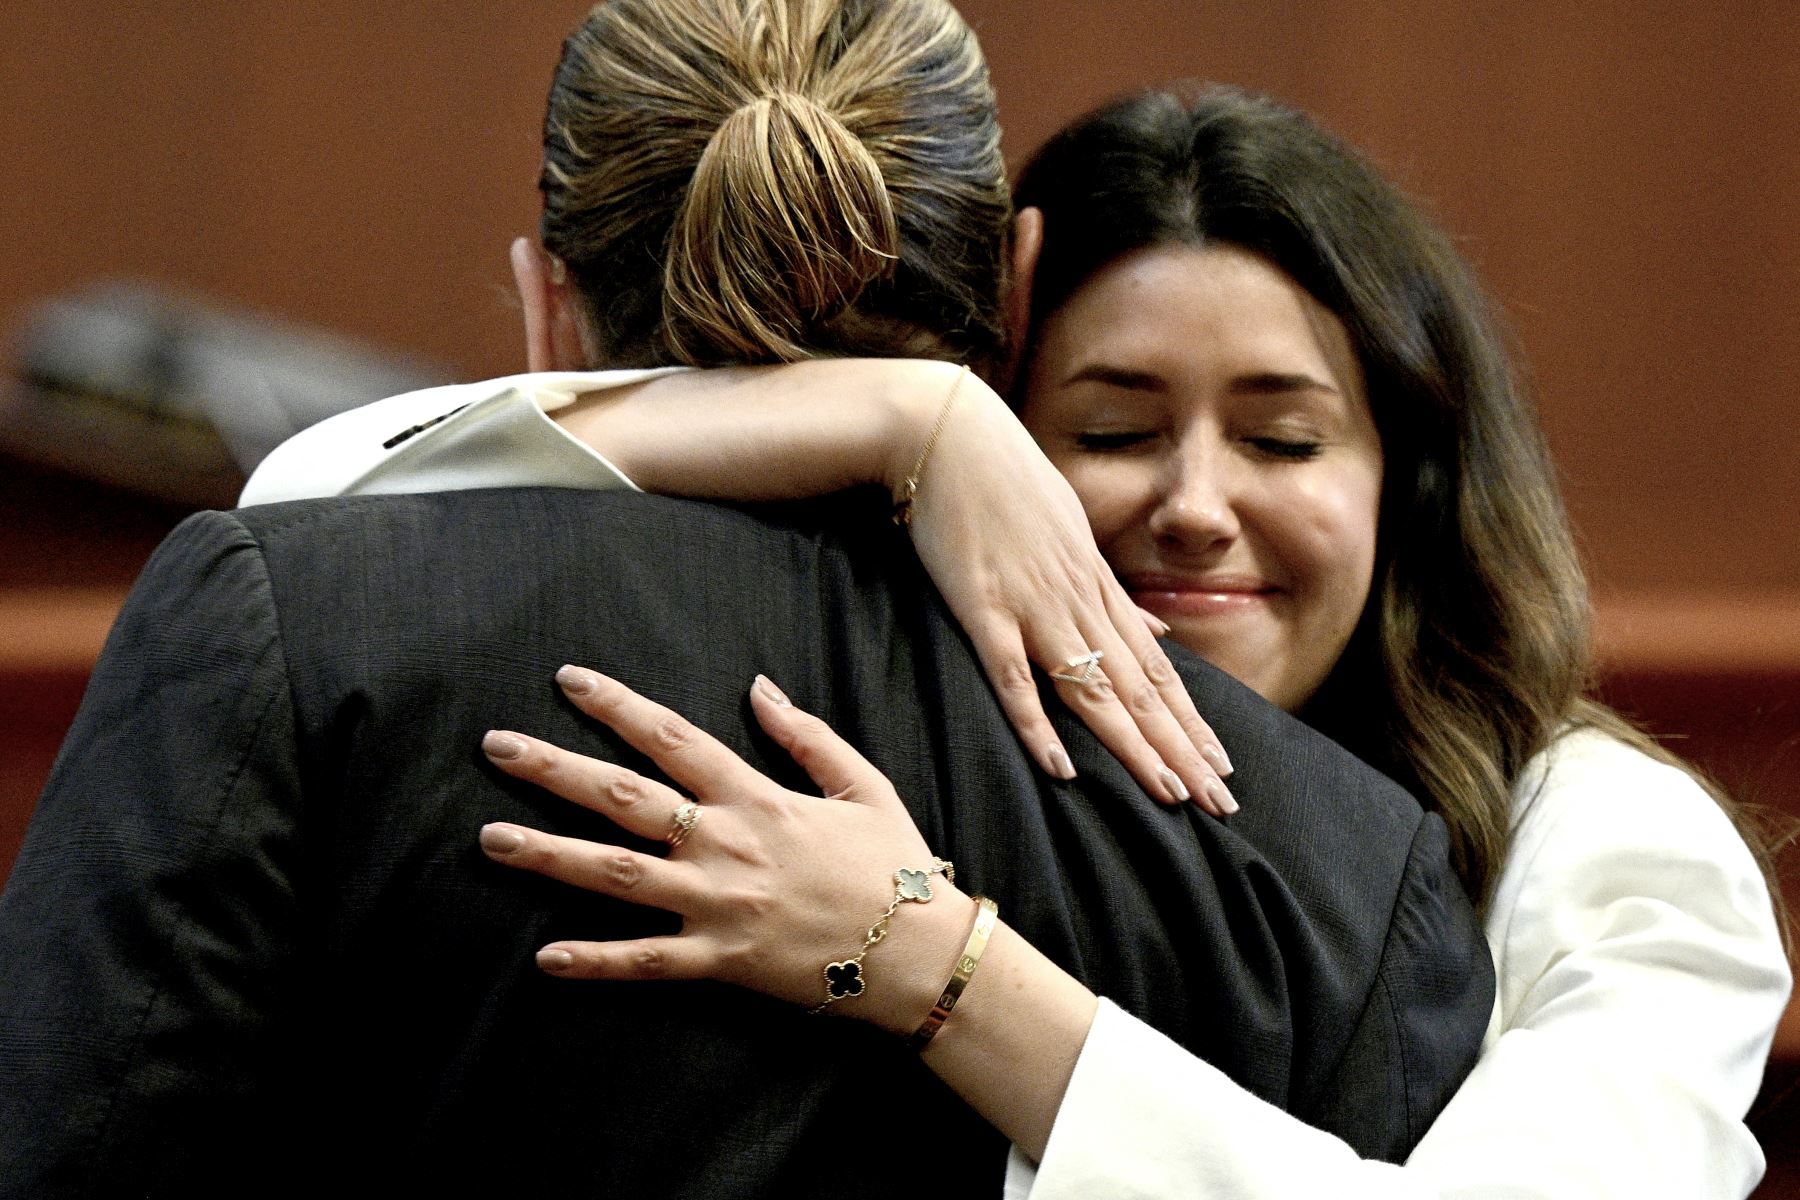 La abogada Camille Vasquez abraza al actor estadounidense Johnny Depp en la sala del tribunal del circuito del condado de Fairfax en Fairfax, Virginia, como se puede ver en esta foto de archivo tomada el 17 de mayo de 2022. "Soy hispana, me gusta abrazar a la gente", mencionó. Foto: AFP